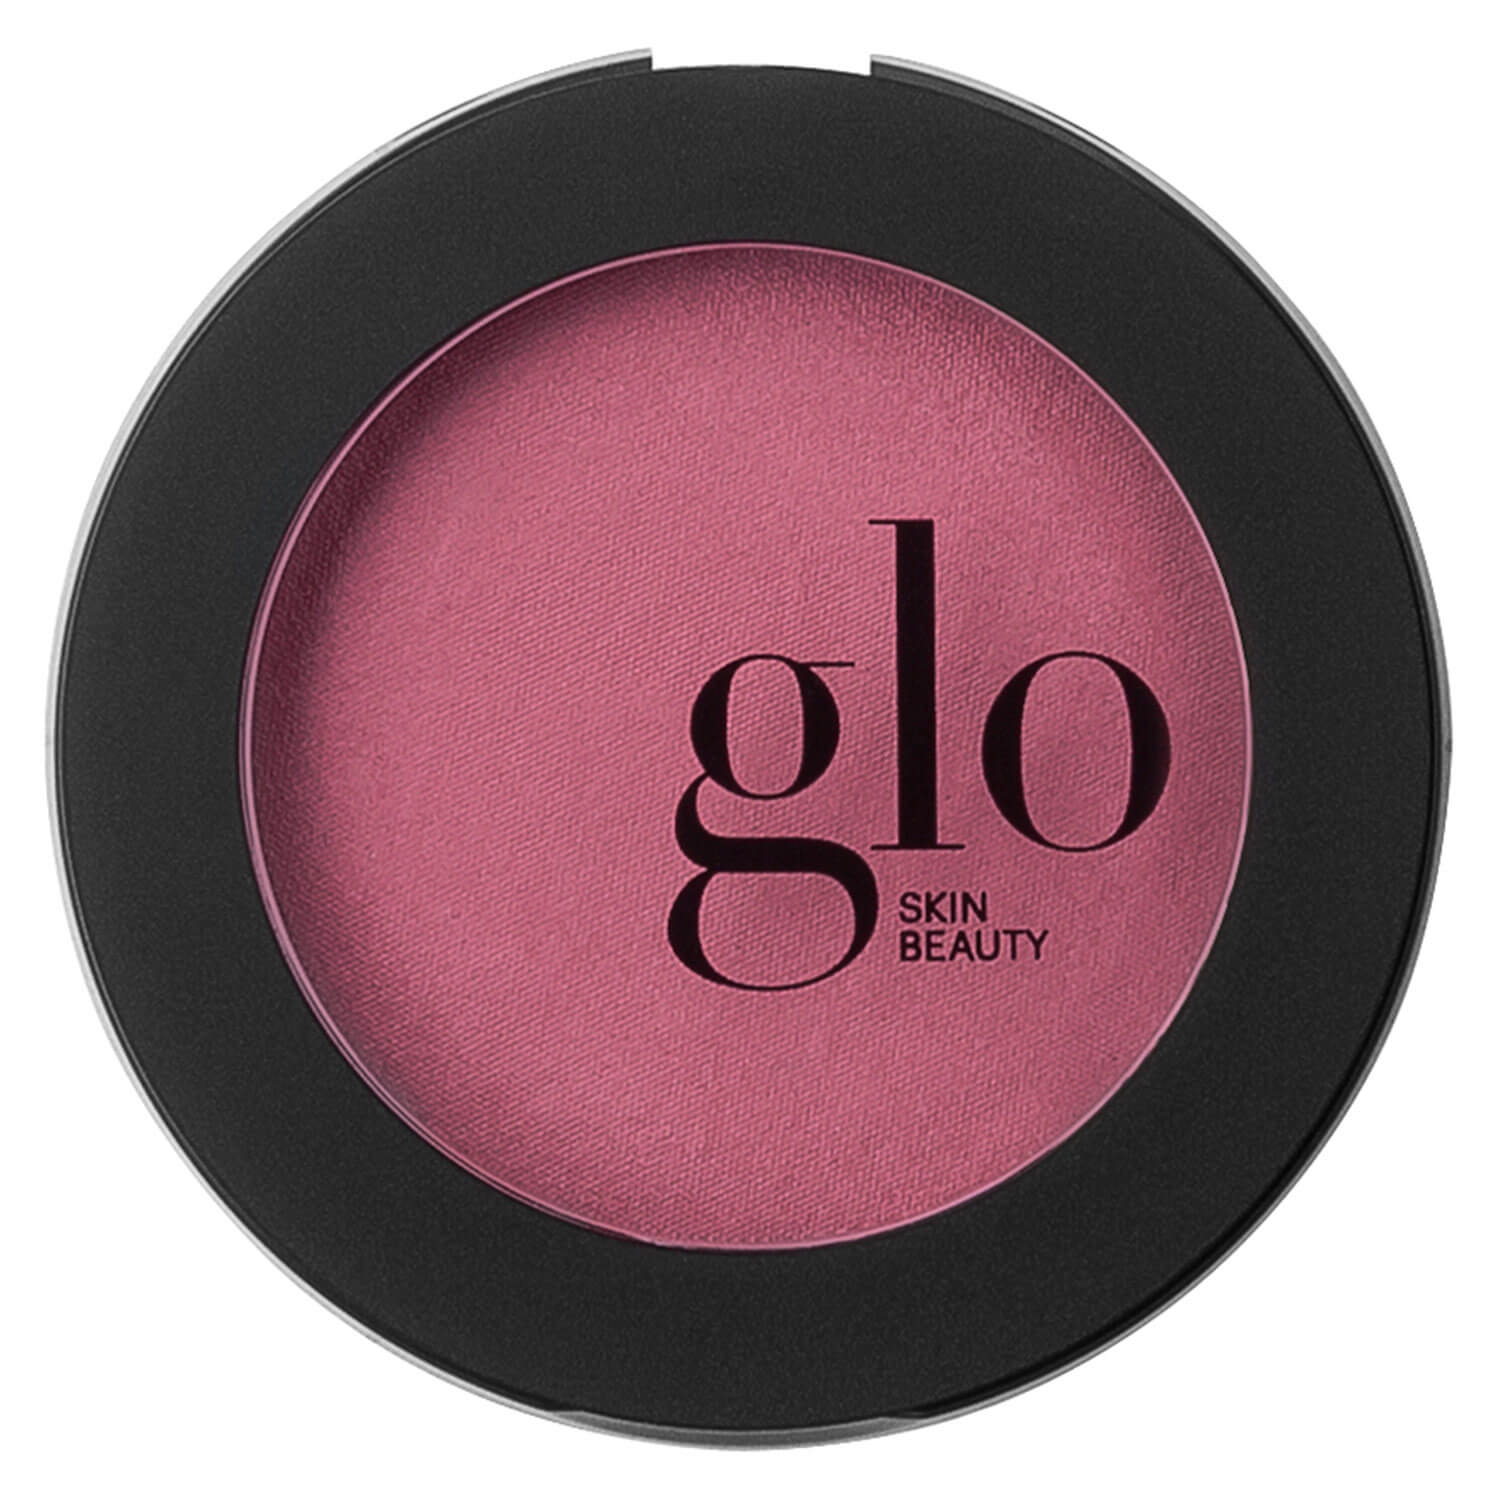 Produktbild von Glo Skin Beauty Blush - Blush Passion